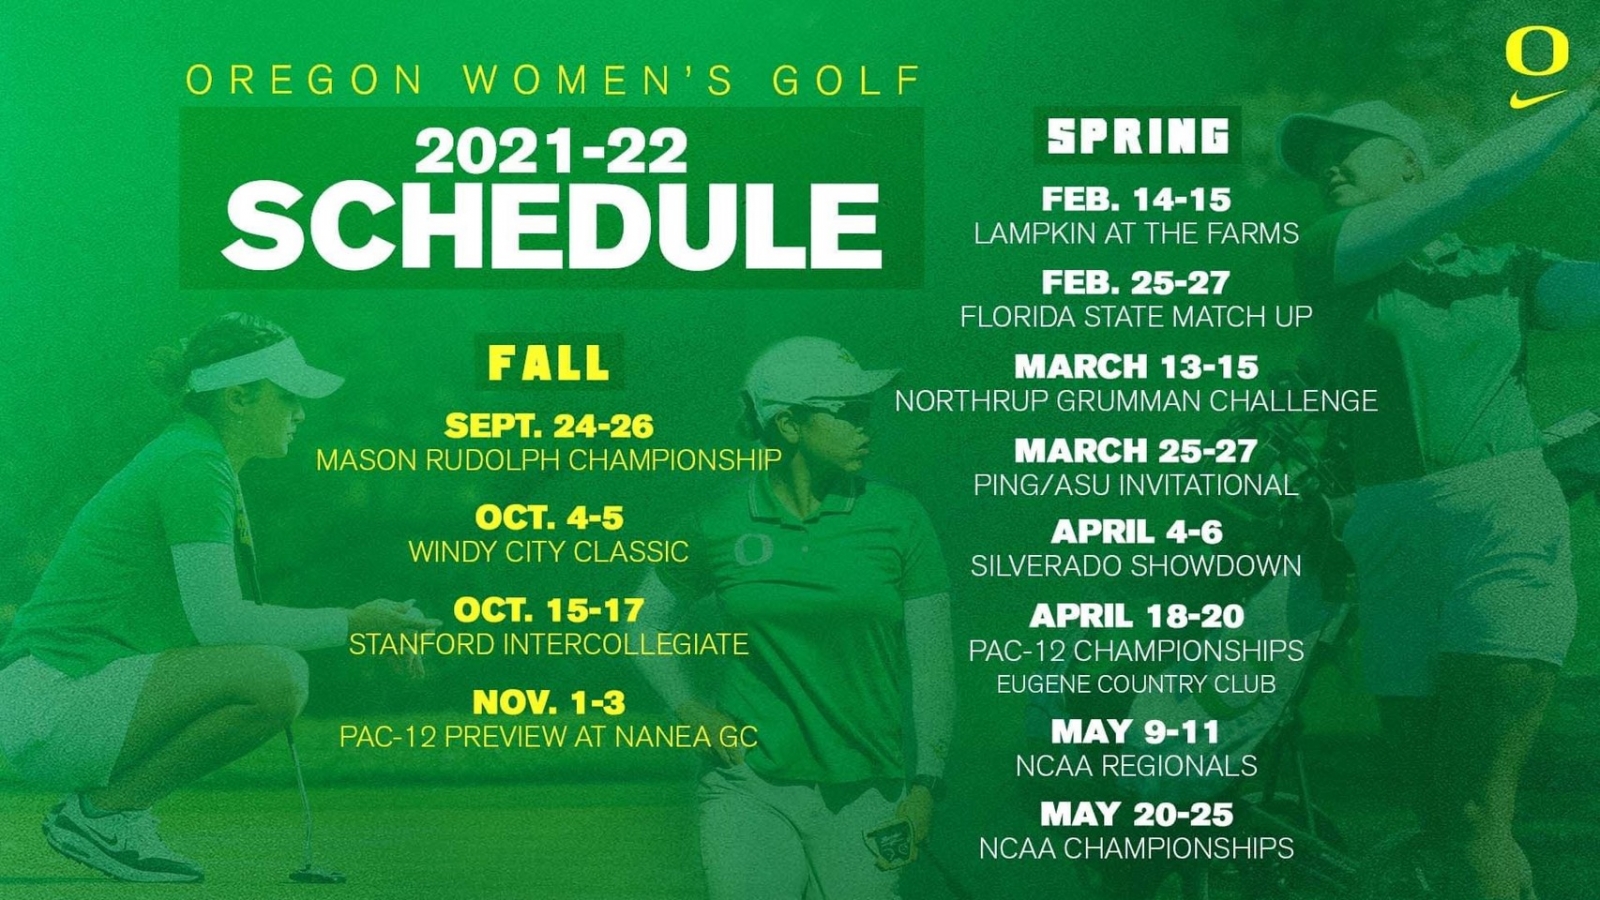 奧瑞岡大學女子高爾夫校隊於NCAA 2021-2022賽季預定賽程。(林子涵家長提供)